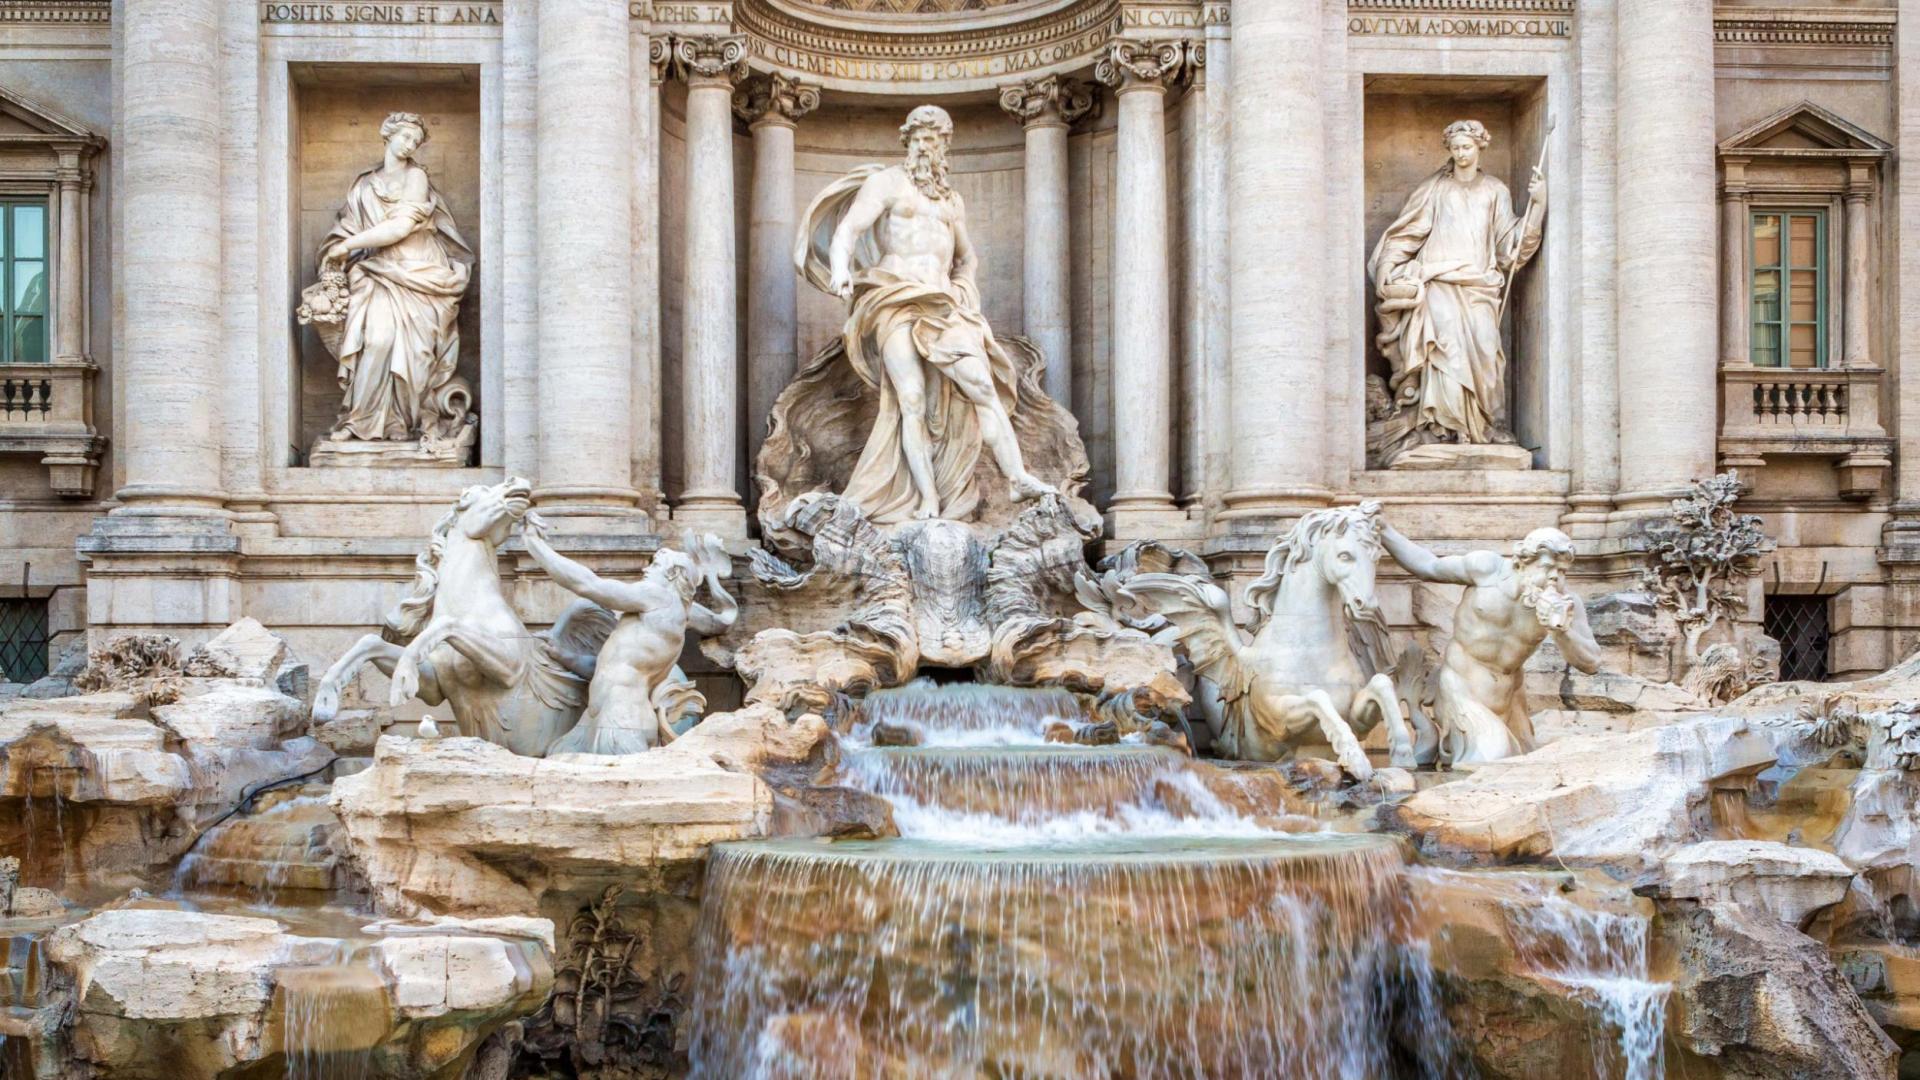 Der Trevi-Brunnen in Rom, geschmückt mit majestätischen Skulpturen und fließendem Wasser.